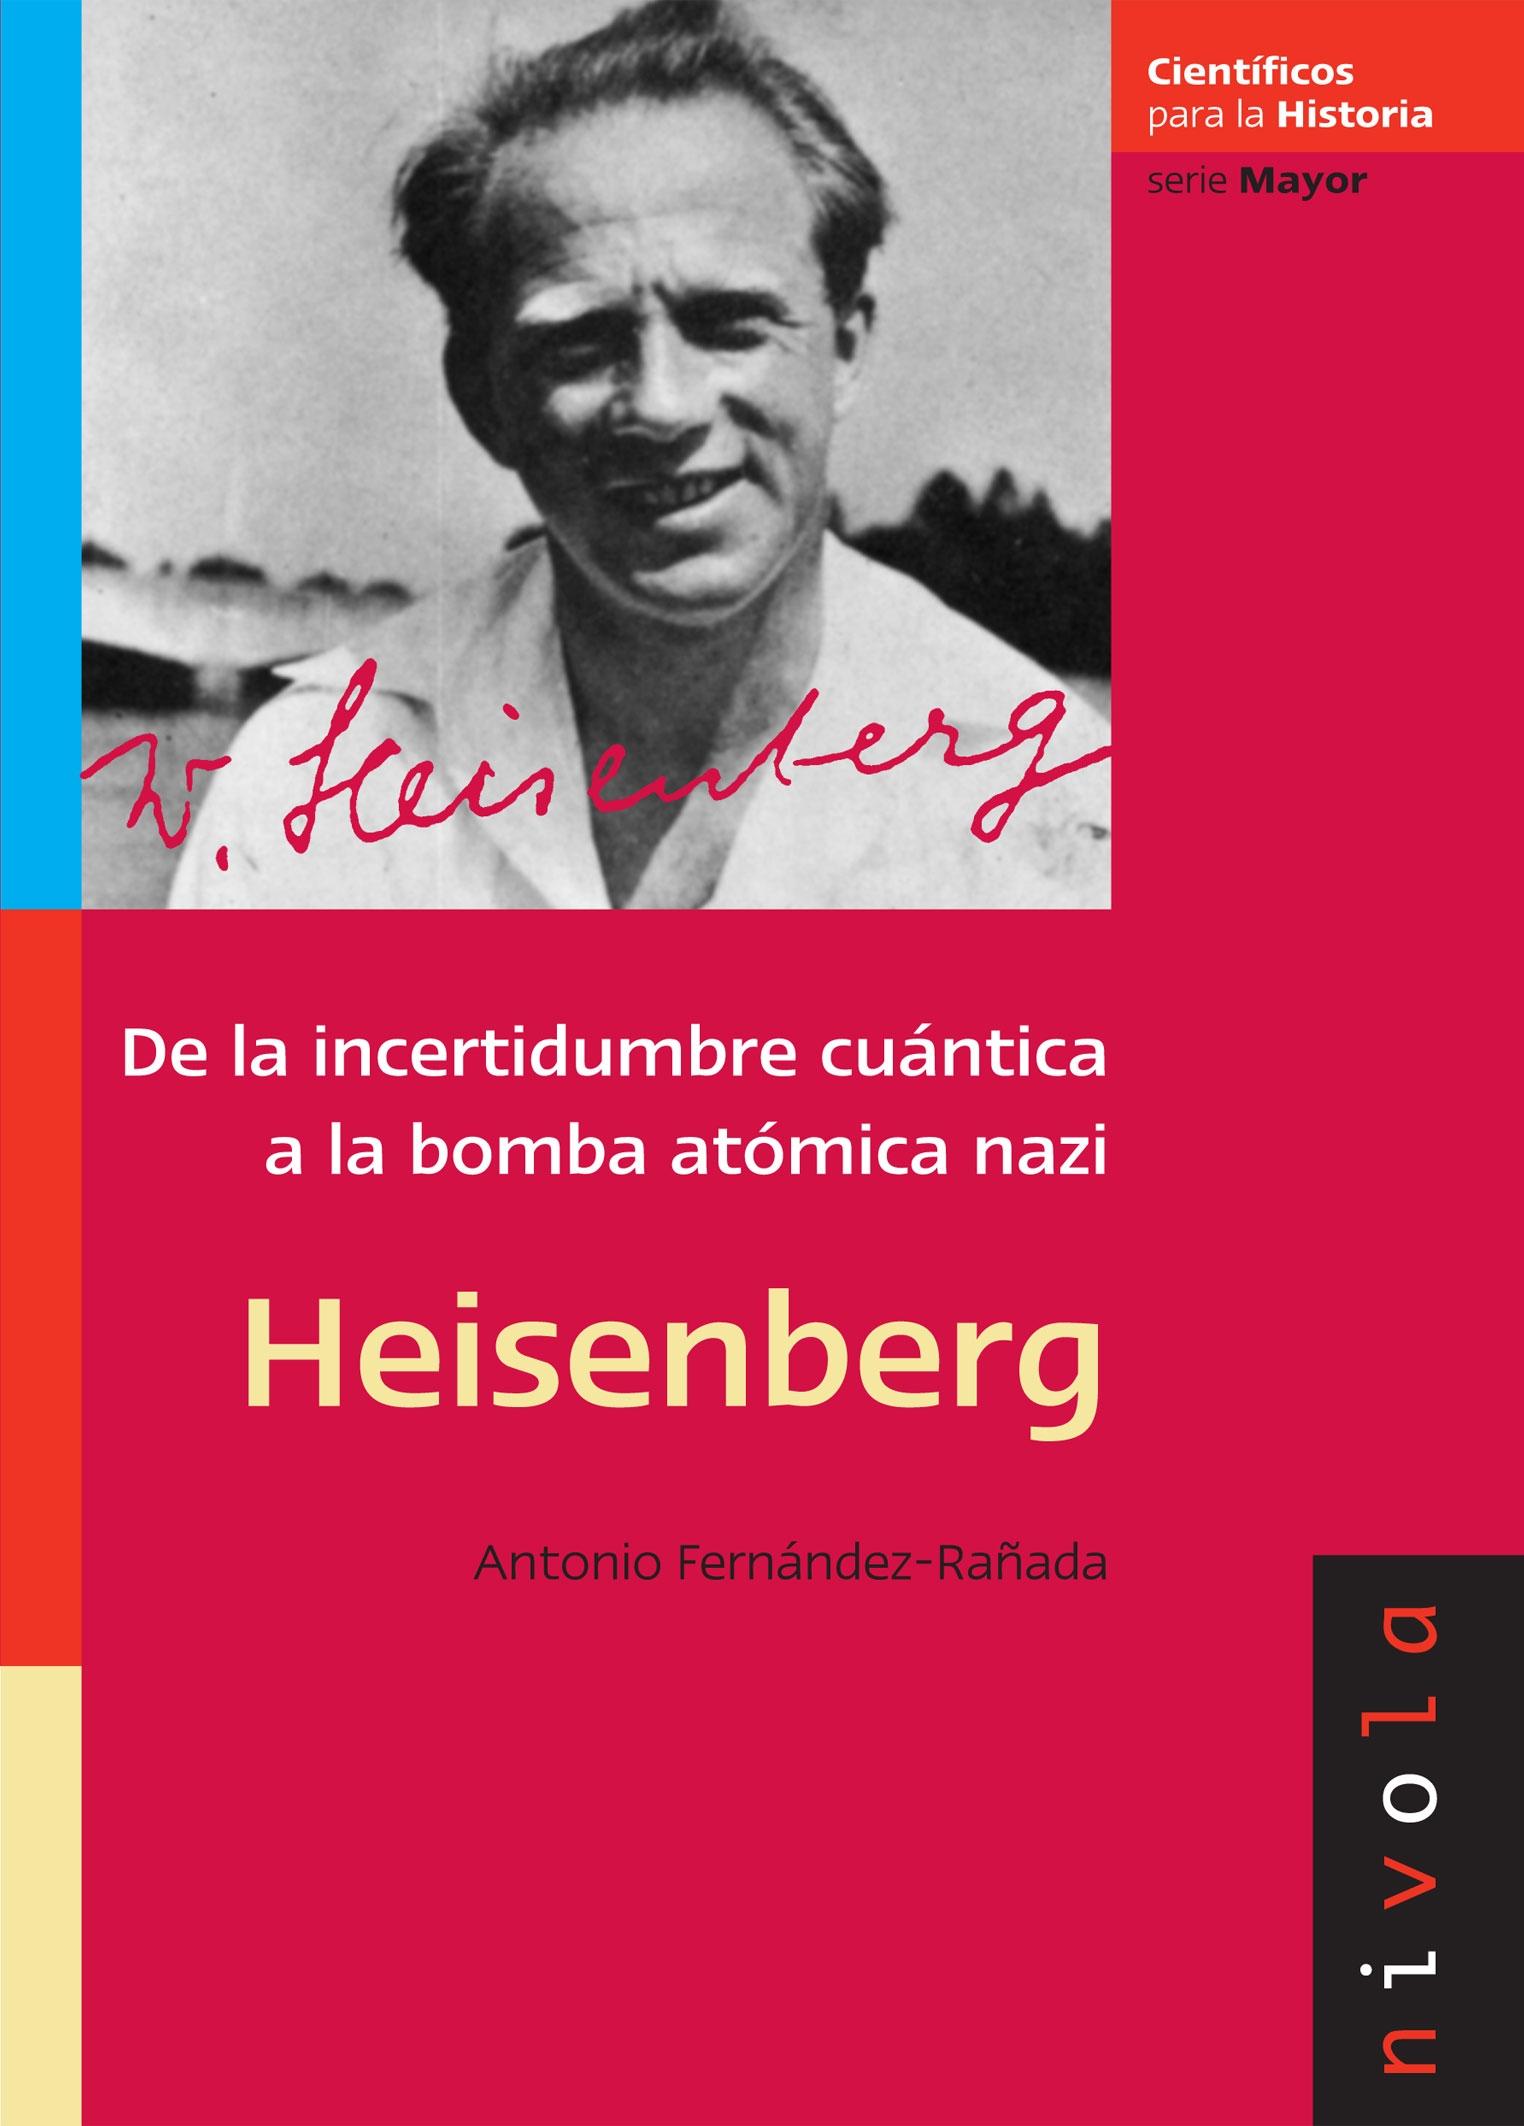 Heisenberg "De la incertidumbre cuántica a la bomba atómica nazi"